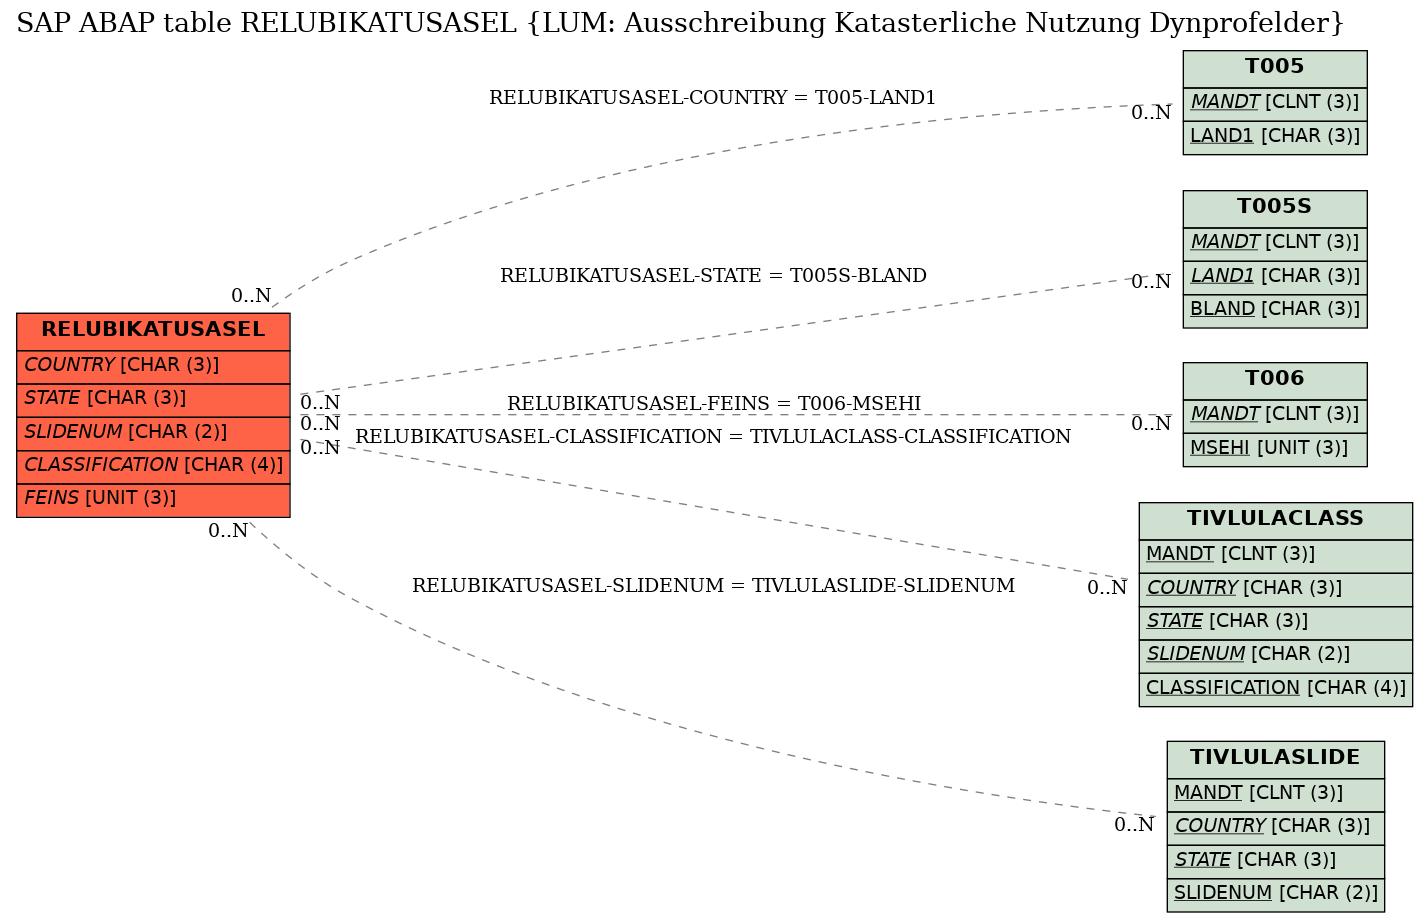 E-R Diagram for table RELUBIKATUSASEL (LUM: Ausschreibung Katasterliche Nutzung Dynprofelder)